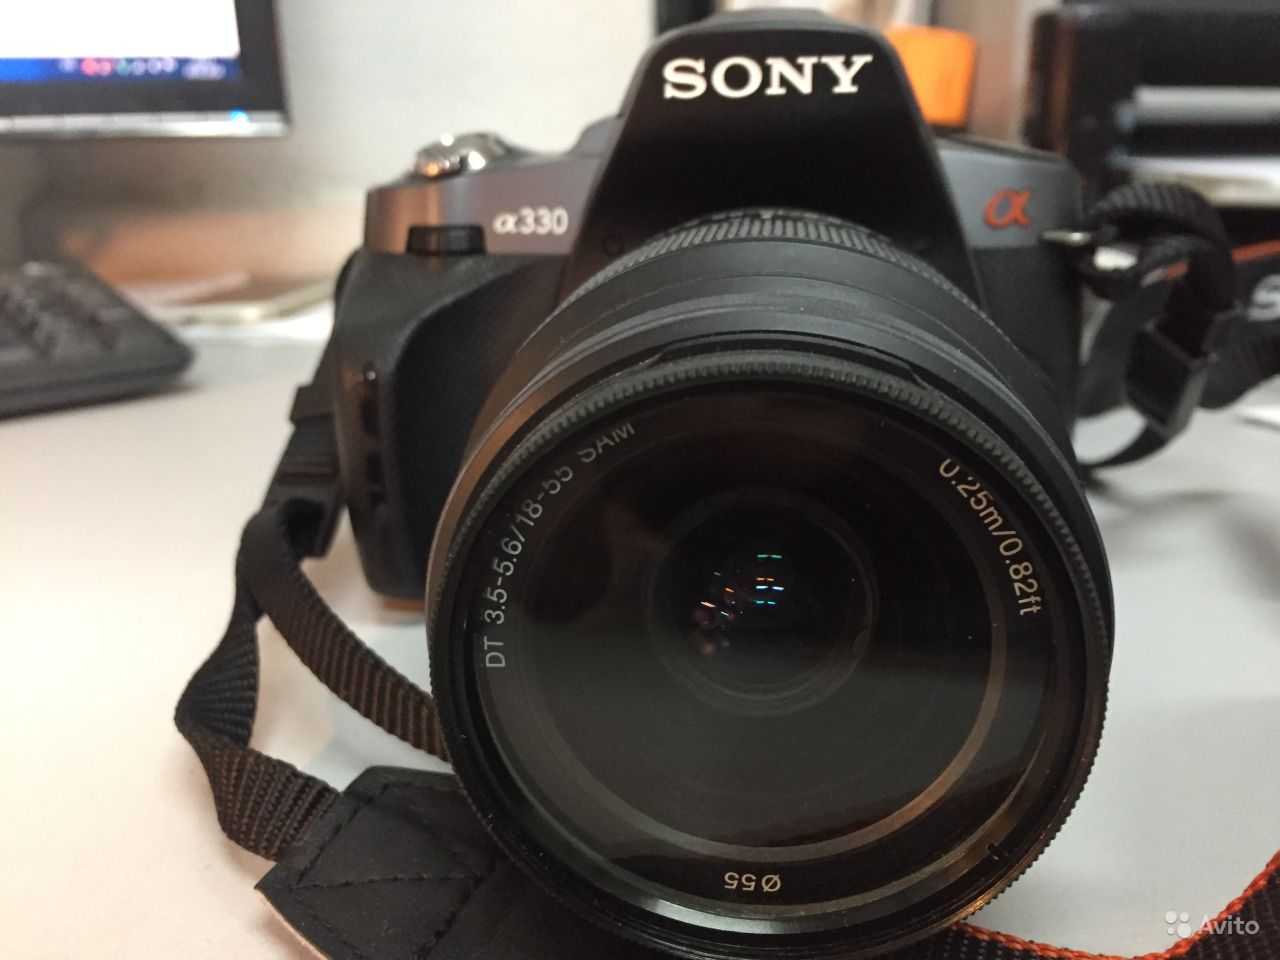 Фотоаппарат sony alpha slt-a33l 18 - 55 kit — купить, цена и характеристики, отзывы